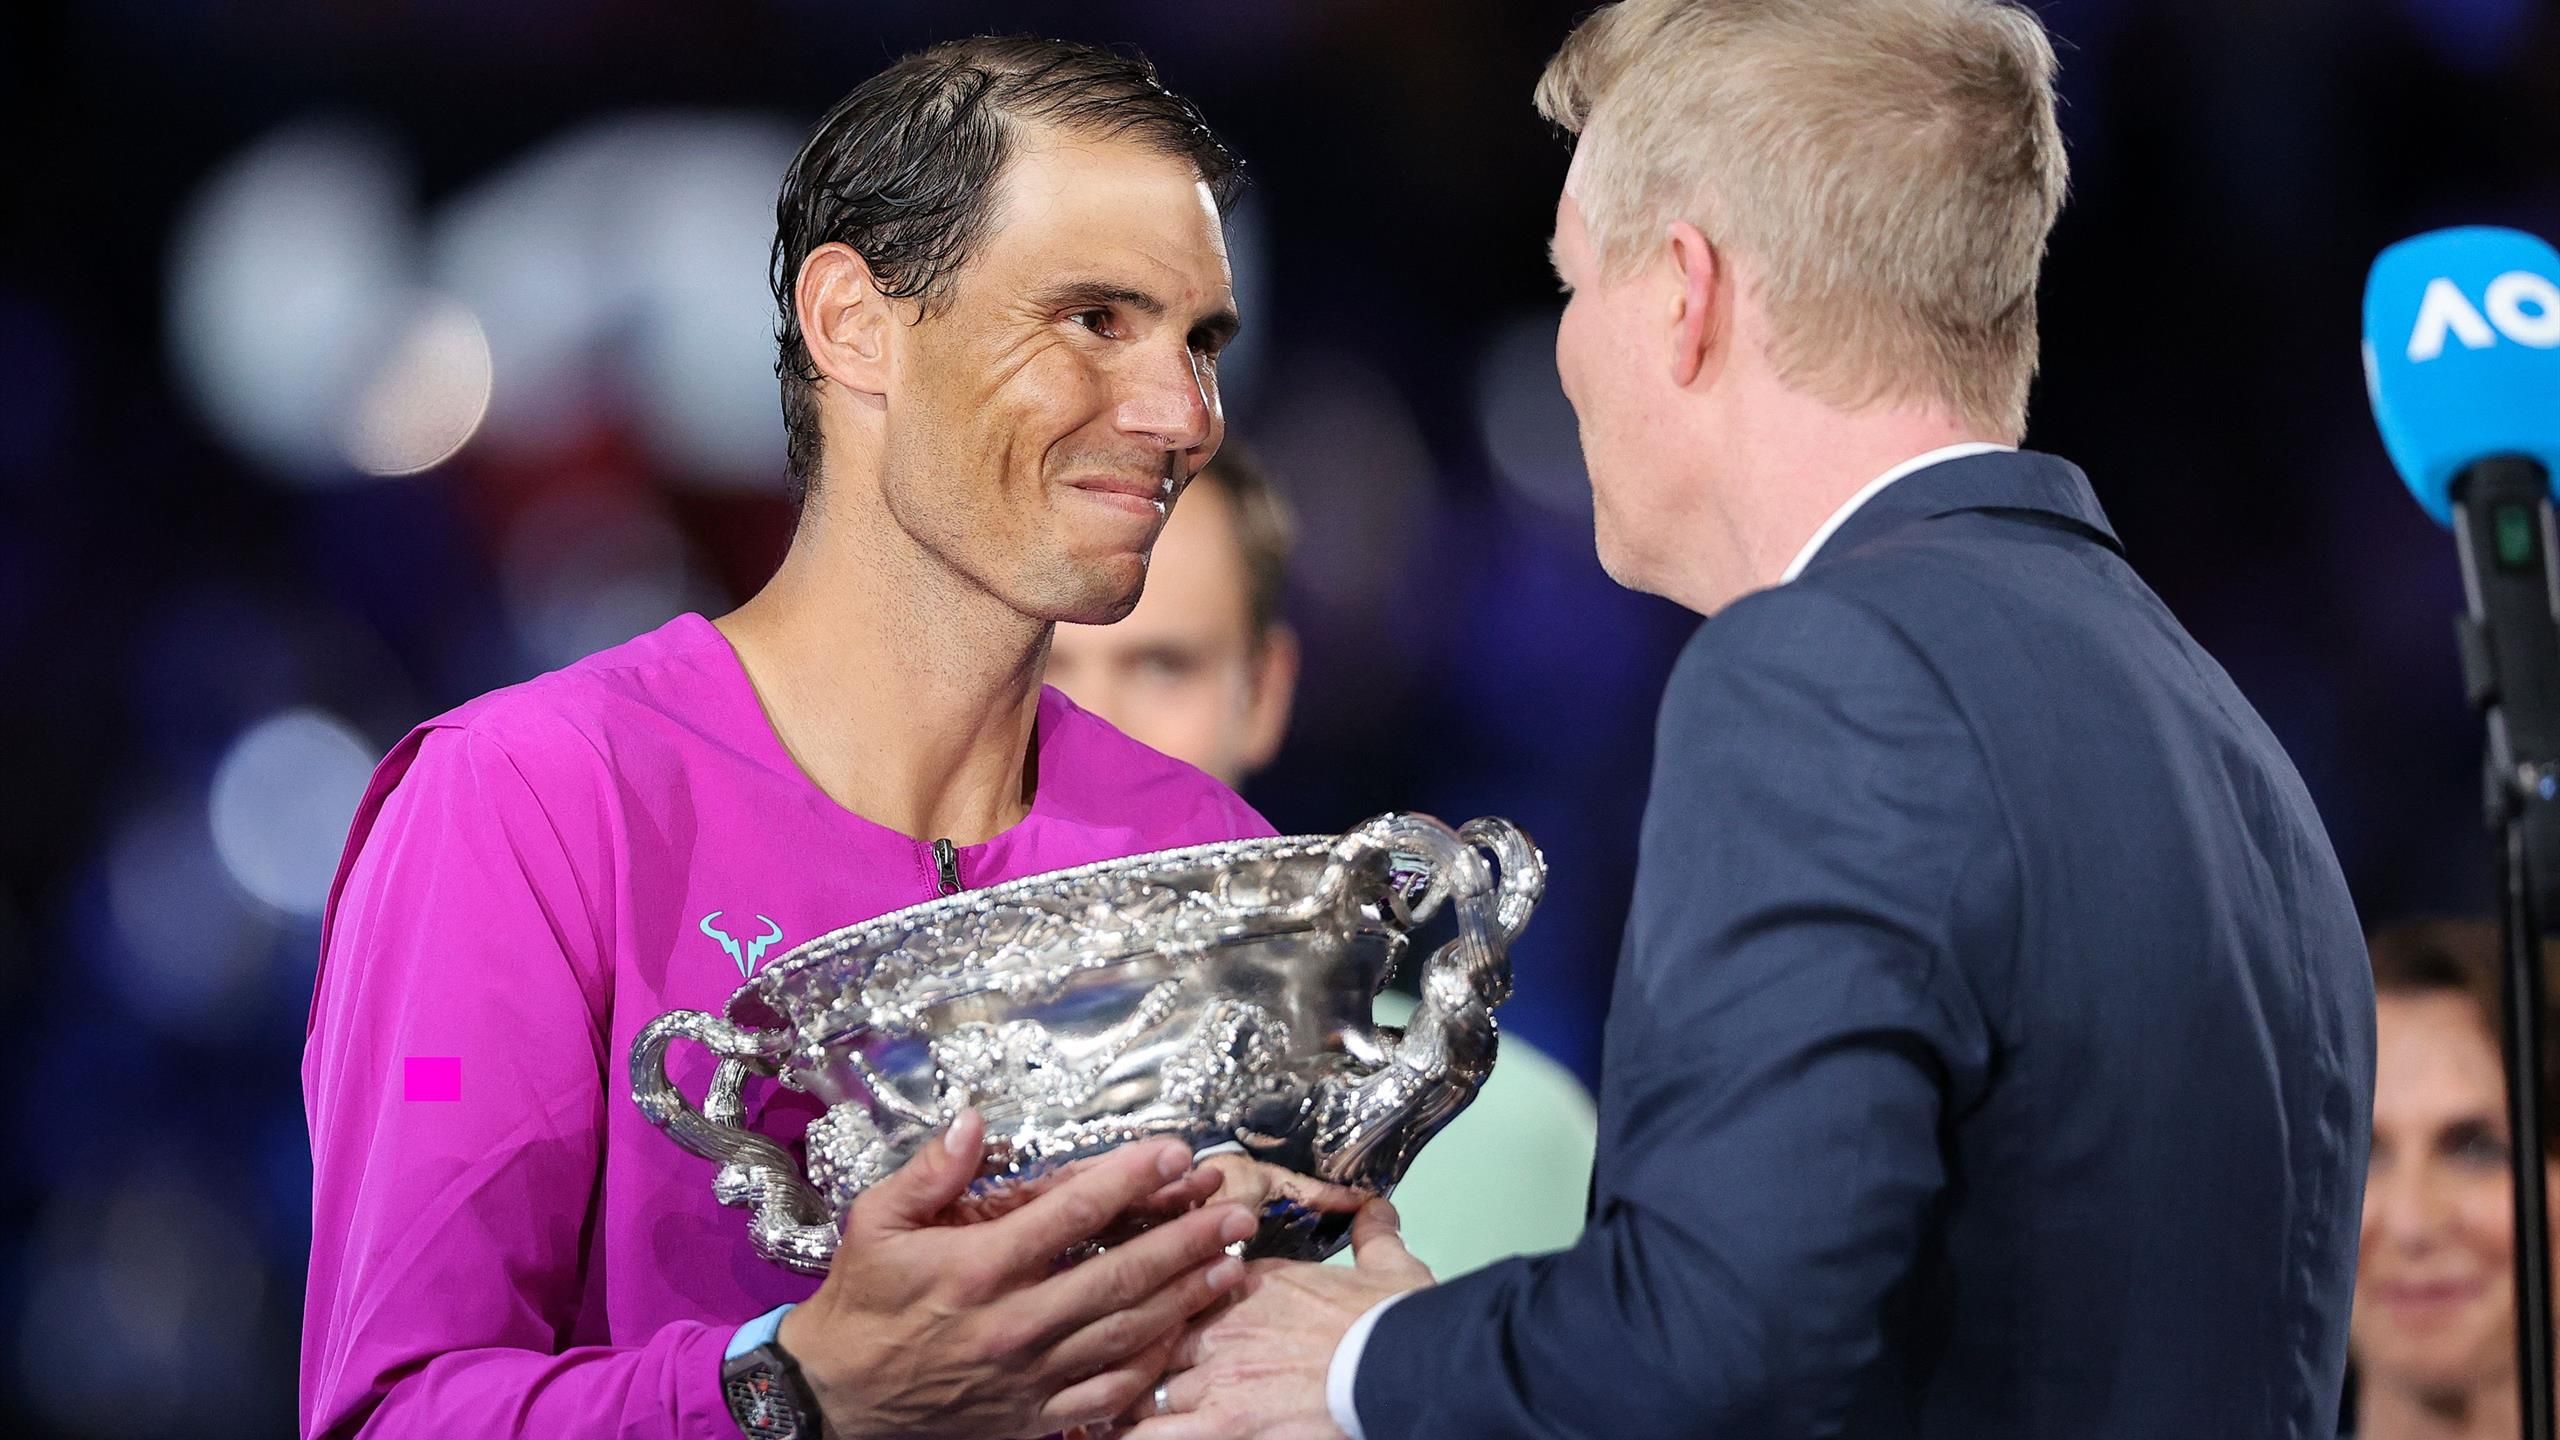 Australian Open 2022 Rafael Nadal emotional auf der Siegerehrung - Daniil Medvedev beweist Humor - Tennis Video